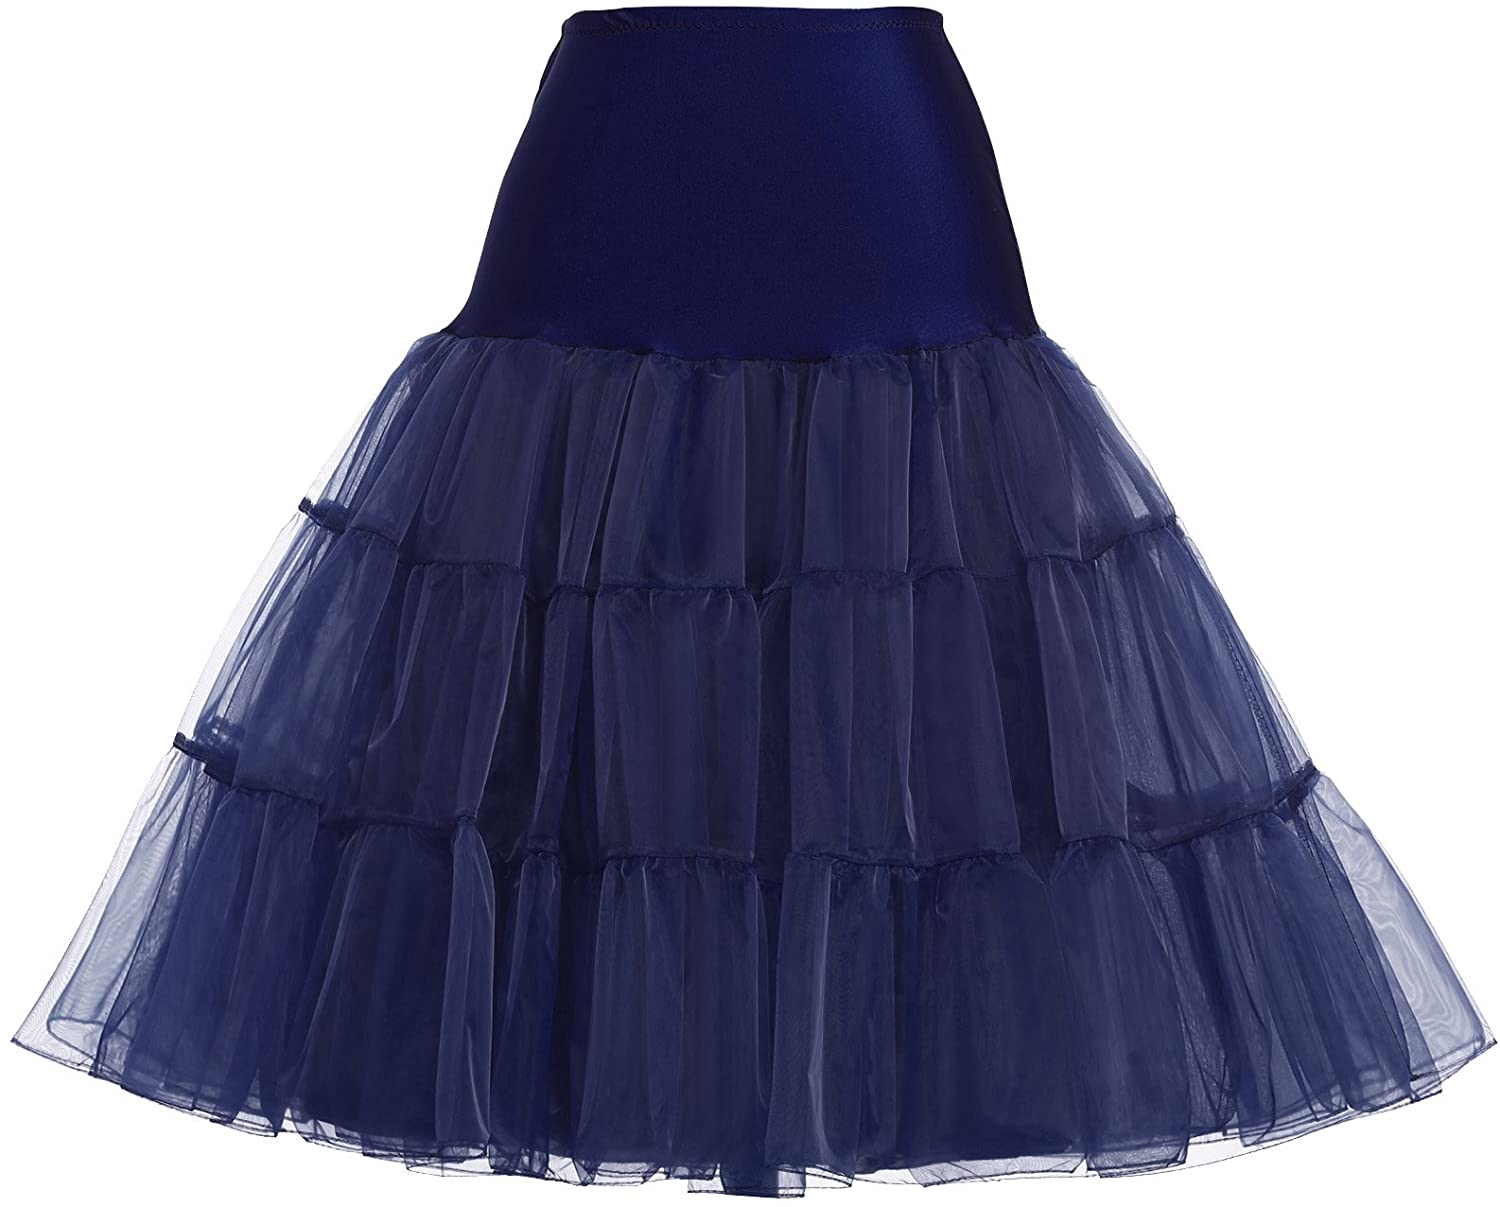 GRACE KARIN Jupon années 50 Vintage en Tulle Rockabilly Petticoat sous Robe Longeur 100cm